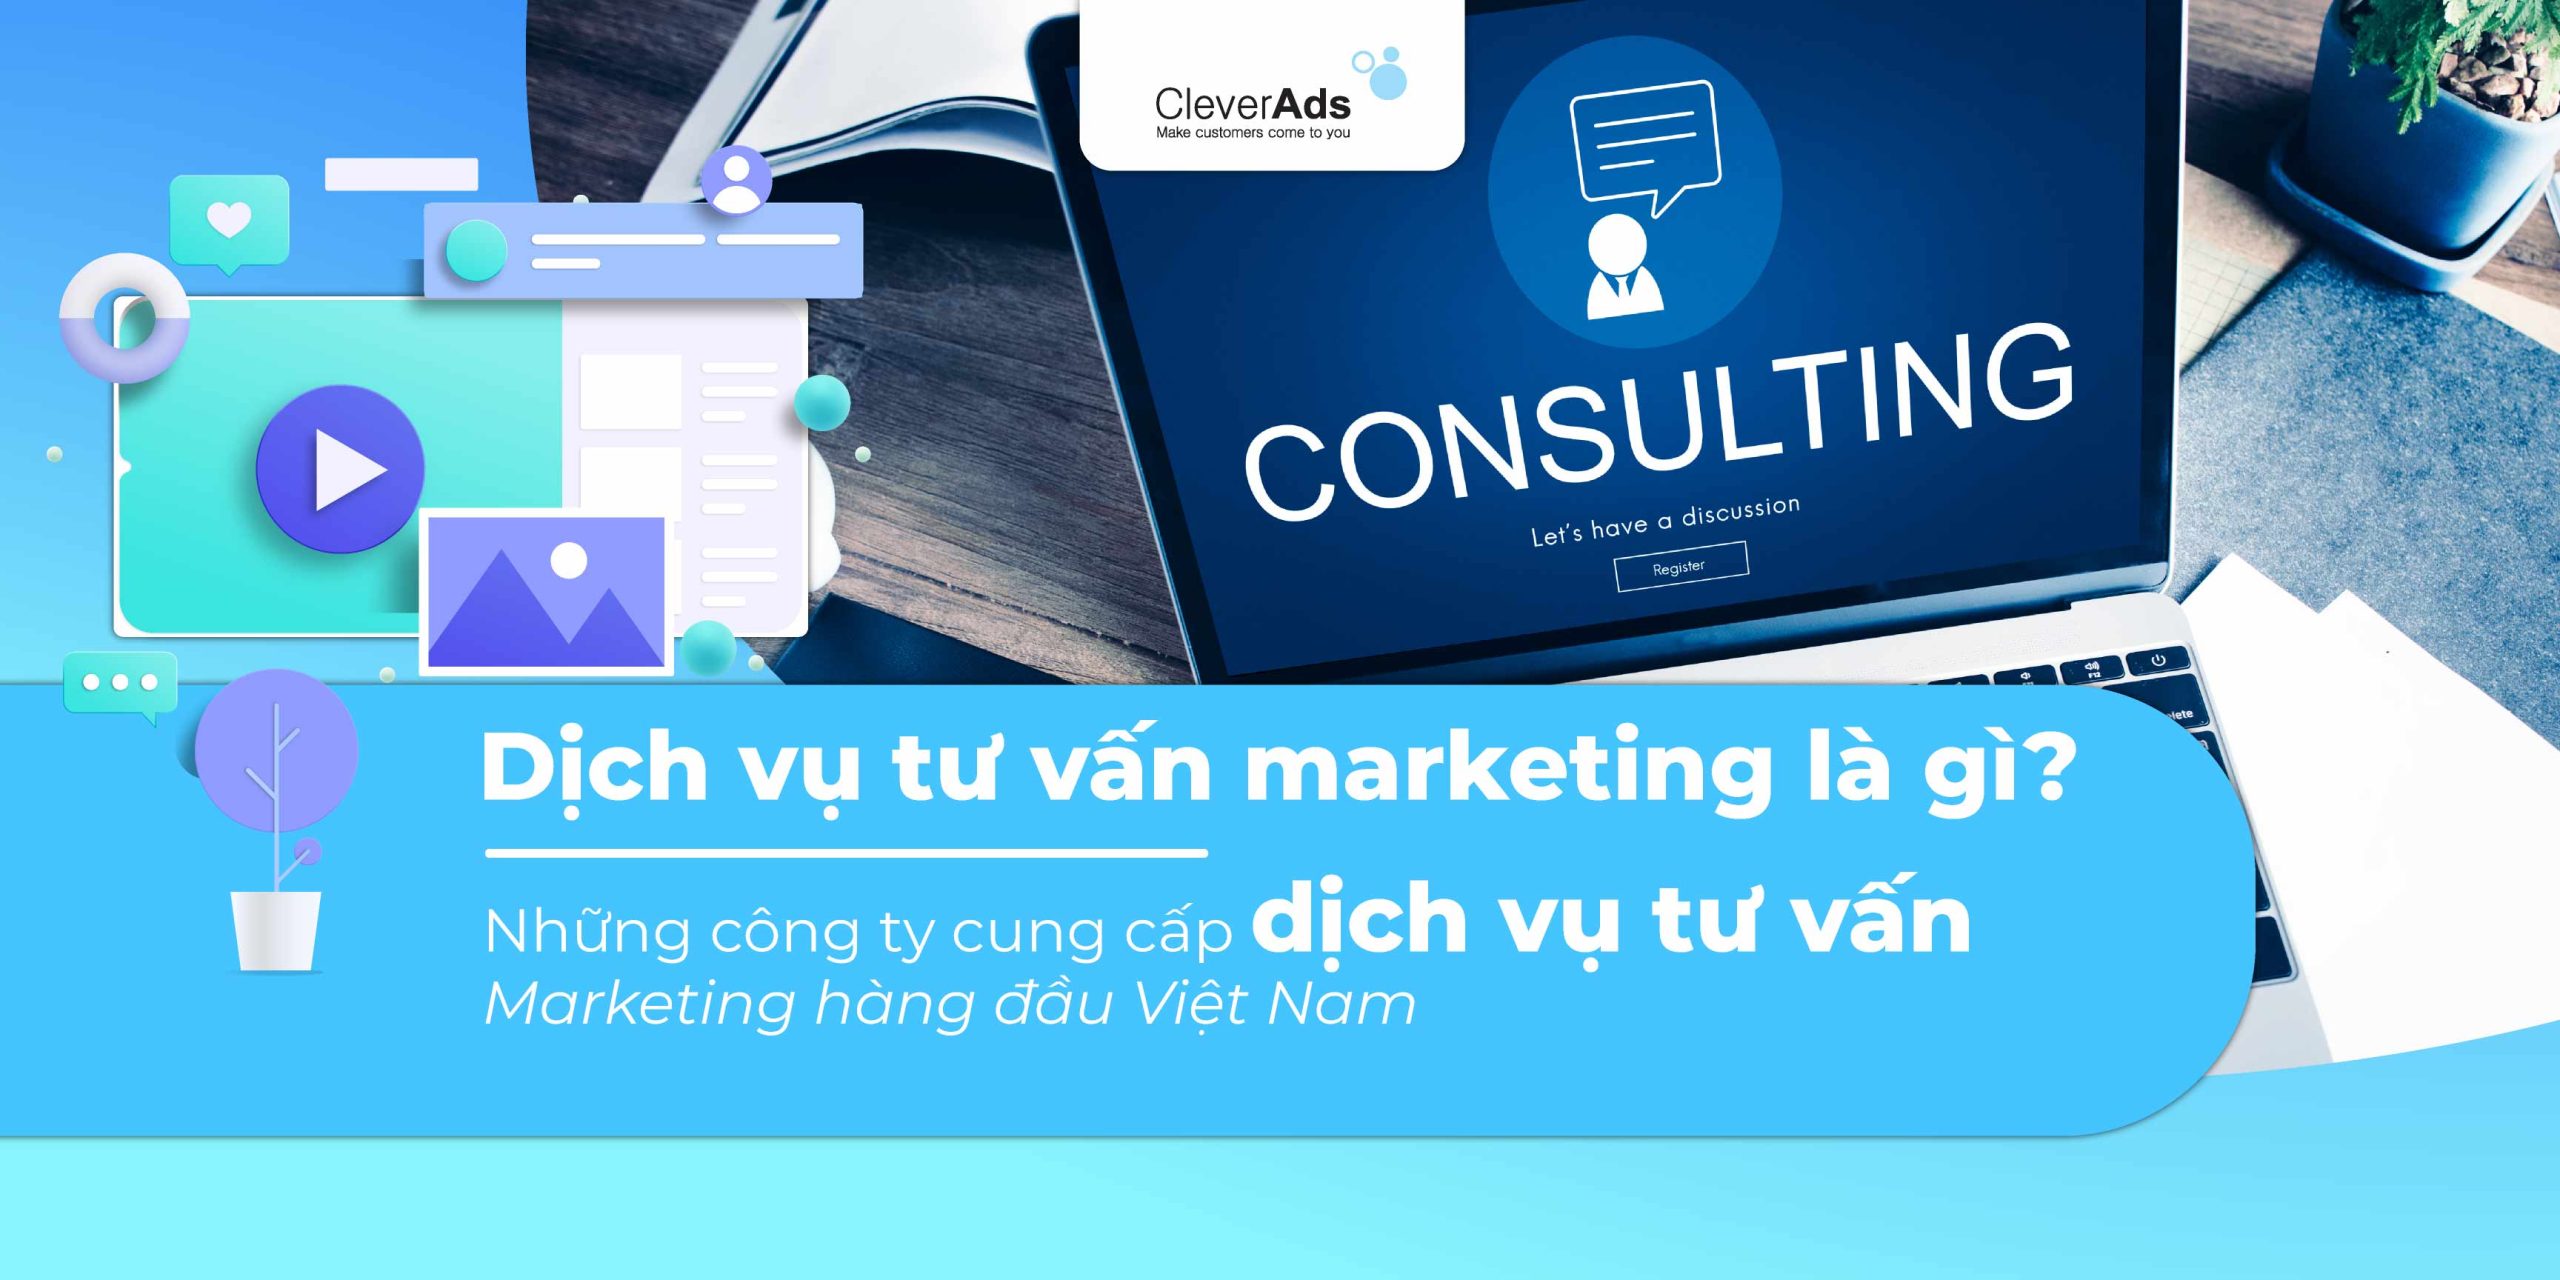 Dịch vụ tư vấn marketing là gì? Những công ty cung cấp dịch vụ tư vấn Marketing hàng đầu Việt Nam